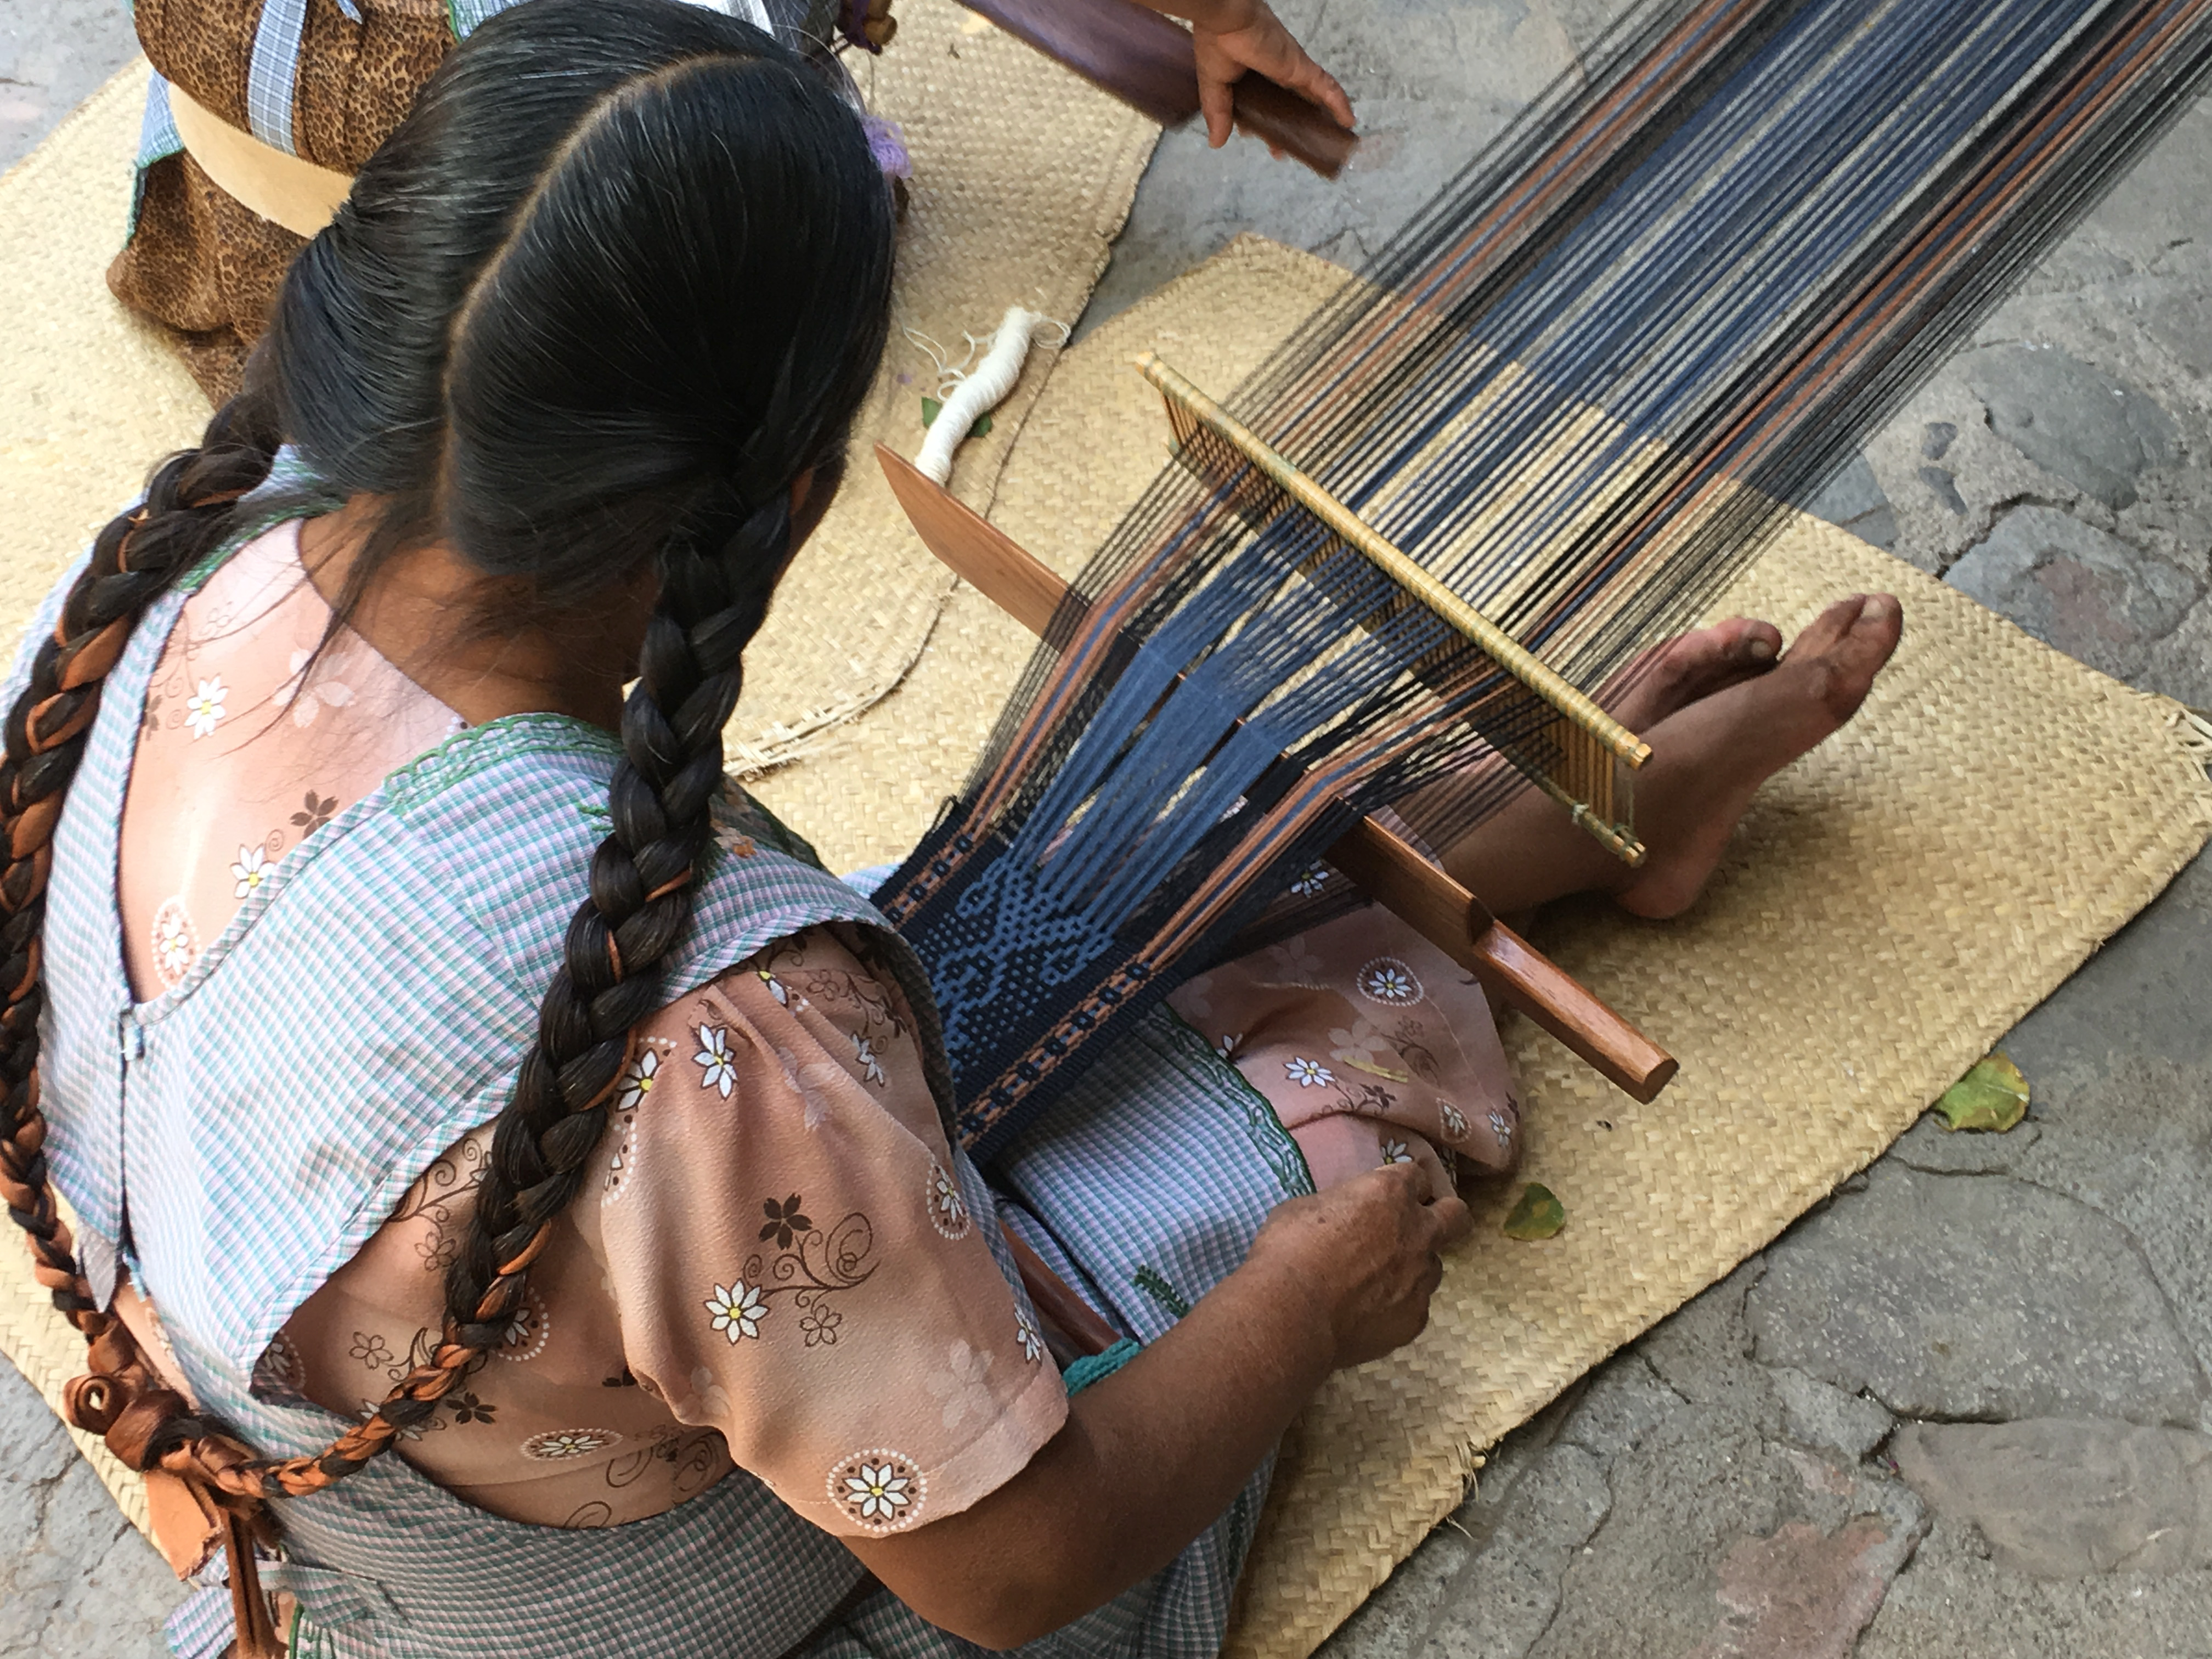 Backstrap weavers in Oaxaca, Mexico